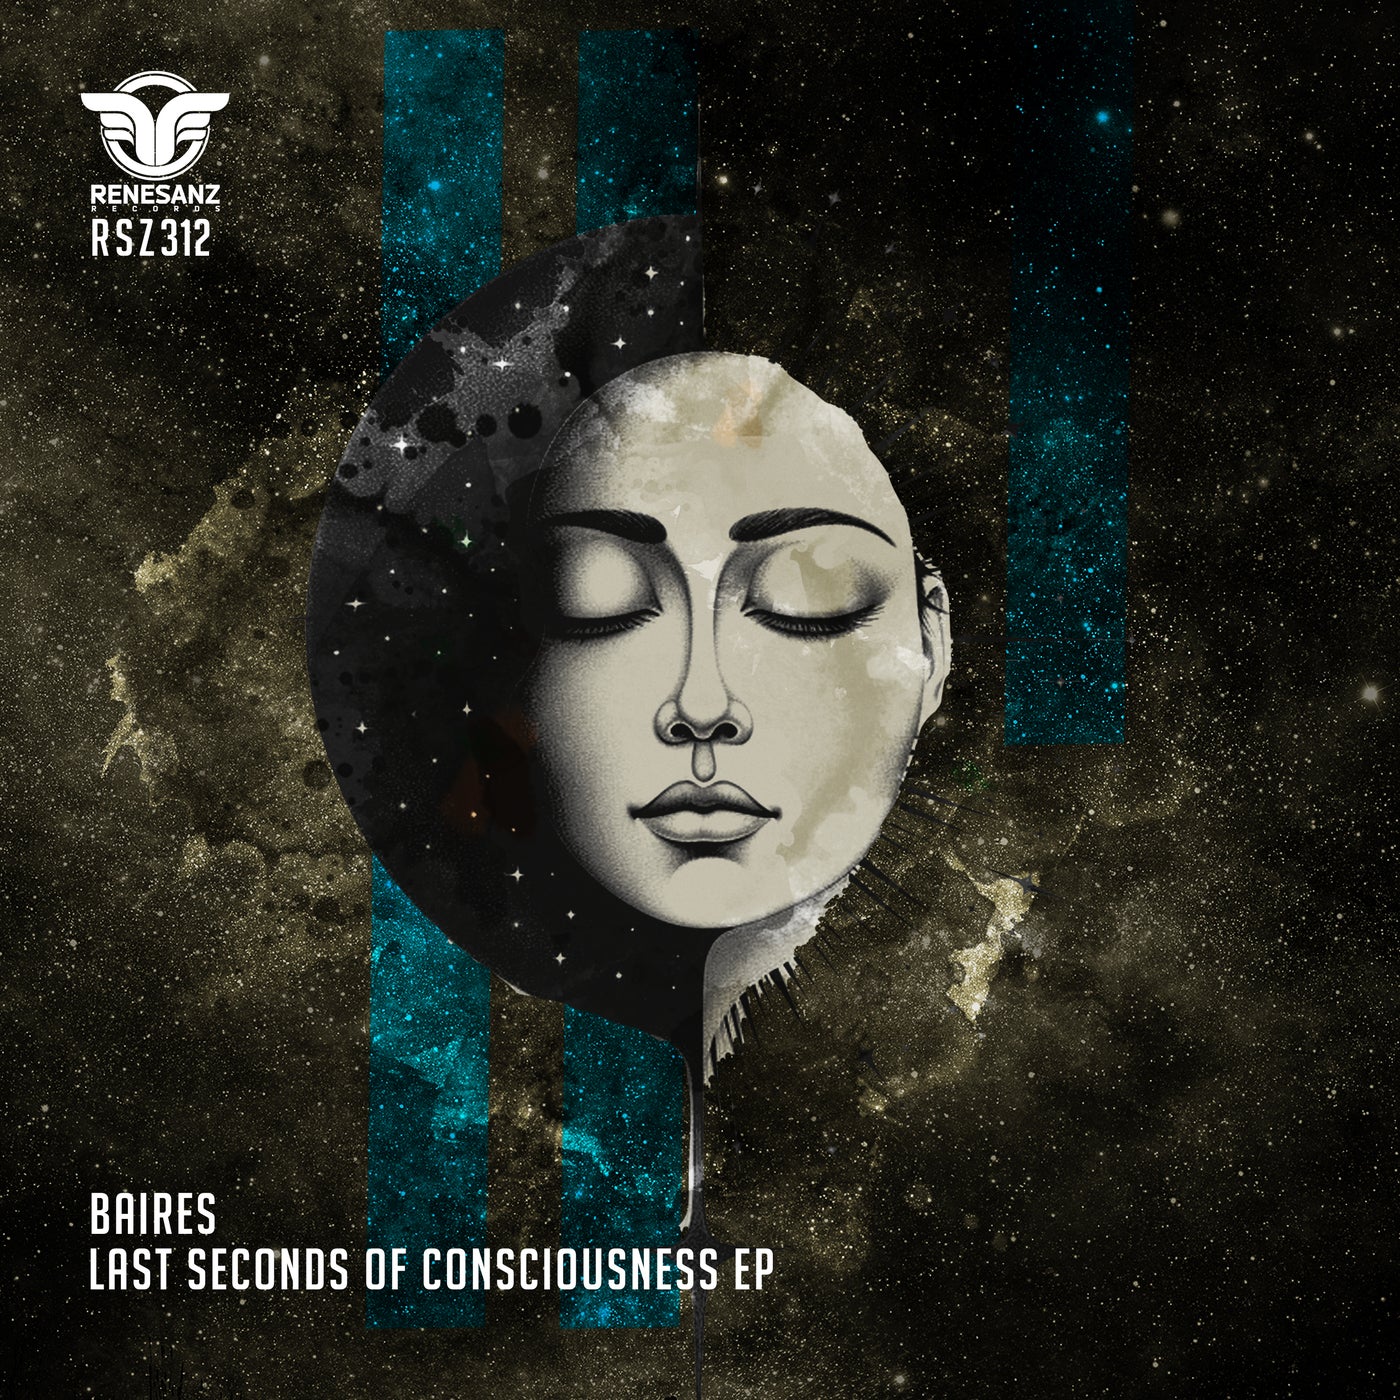 Cover - BAIRES - Sonar (Last Seconds Of Consciousness) (Original Mix)